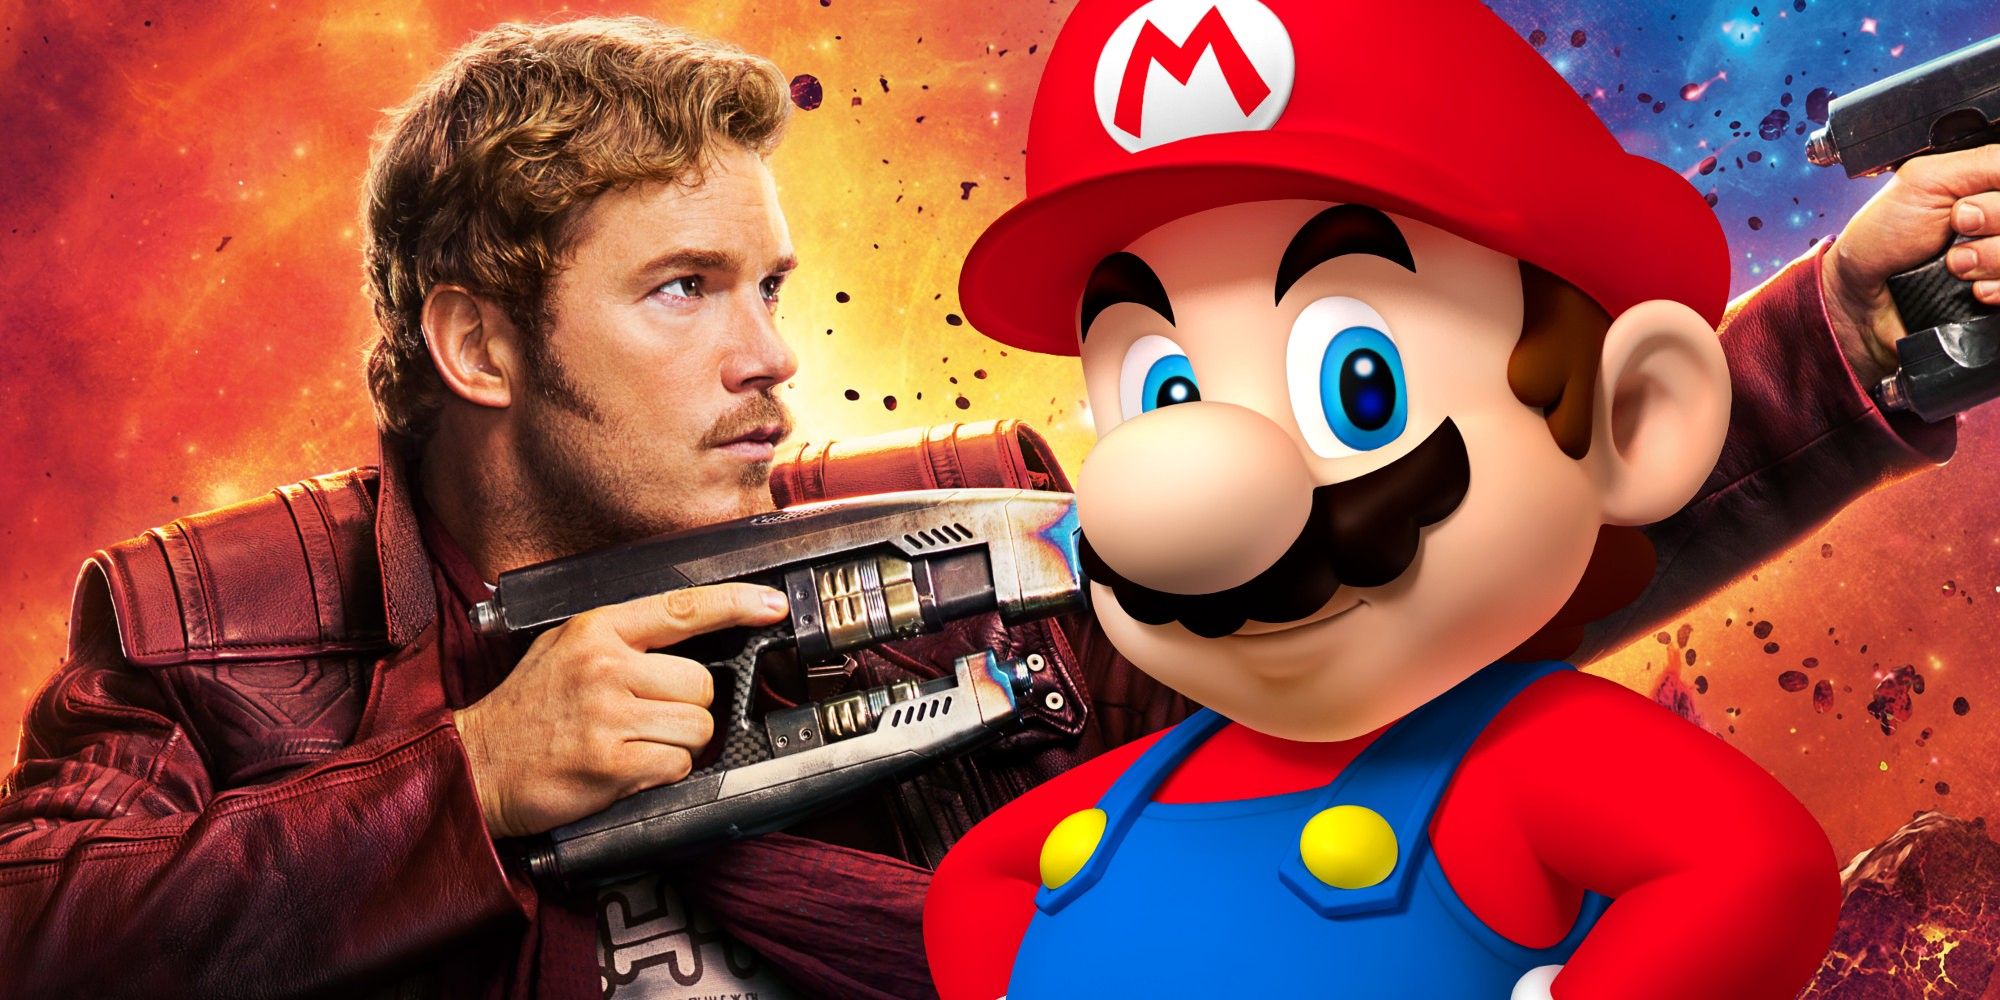 Chris Pratt Teases His Updated Super Mario Bros. Voice